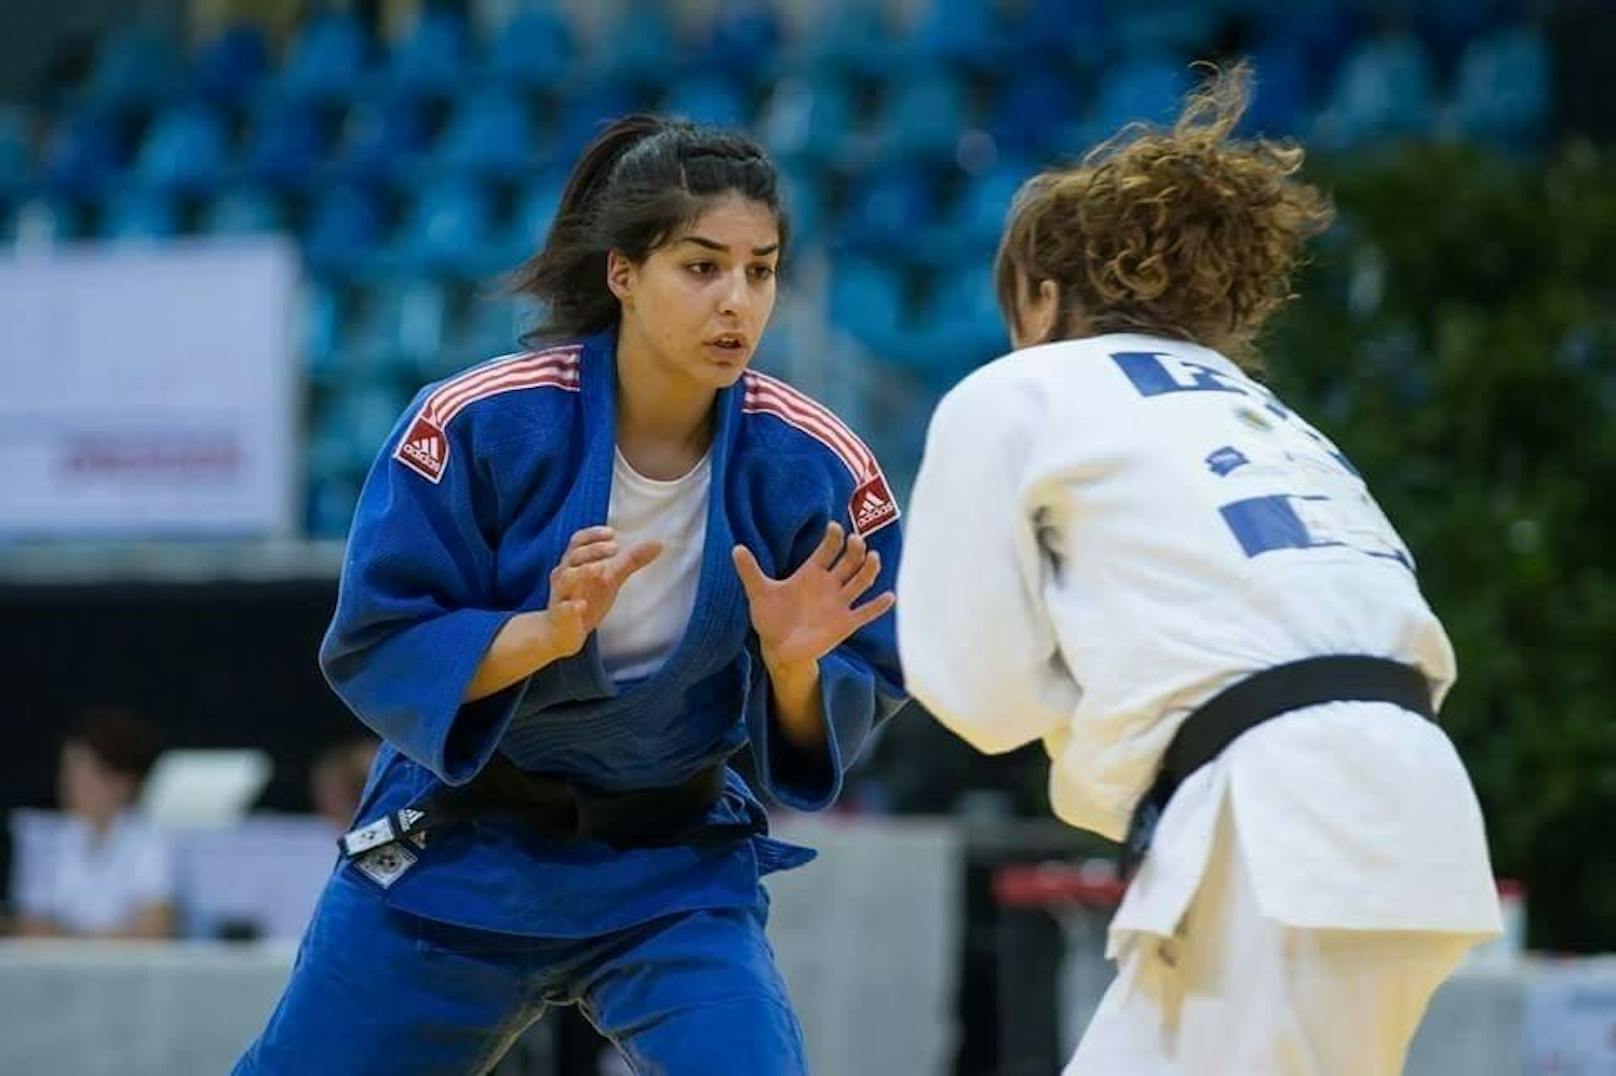 Narges Mohseni ist eine erfolgreiche Judokerin.